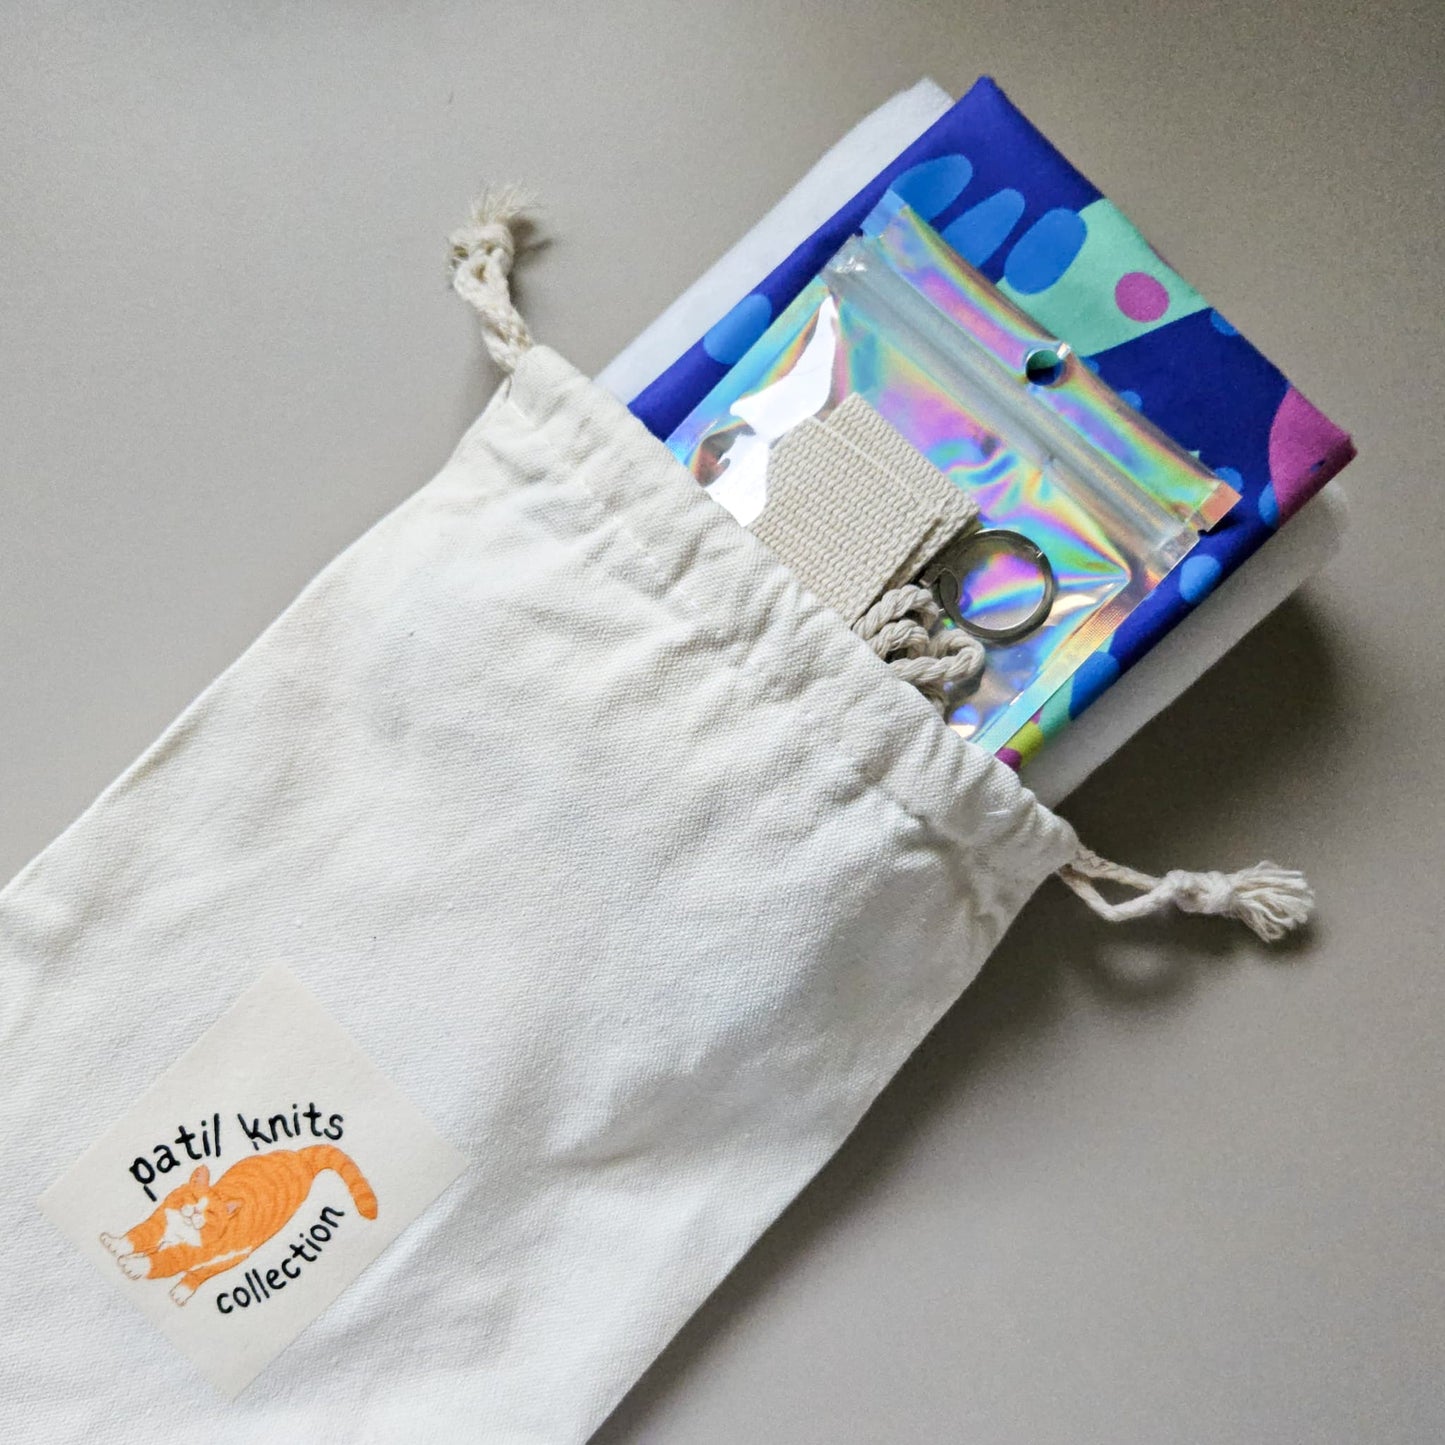 Patil Knits Marshmallow Bag Sewing Pattern Kit - Rosie